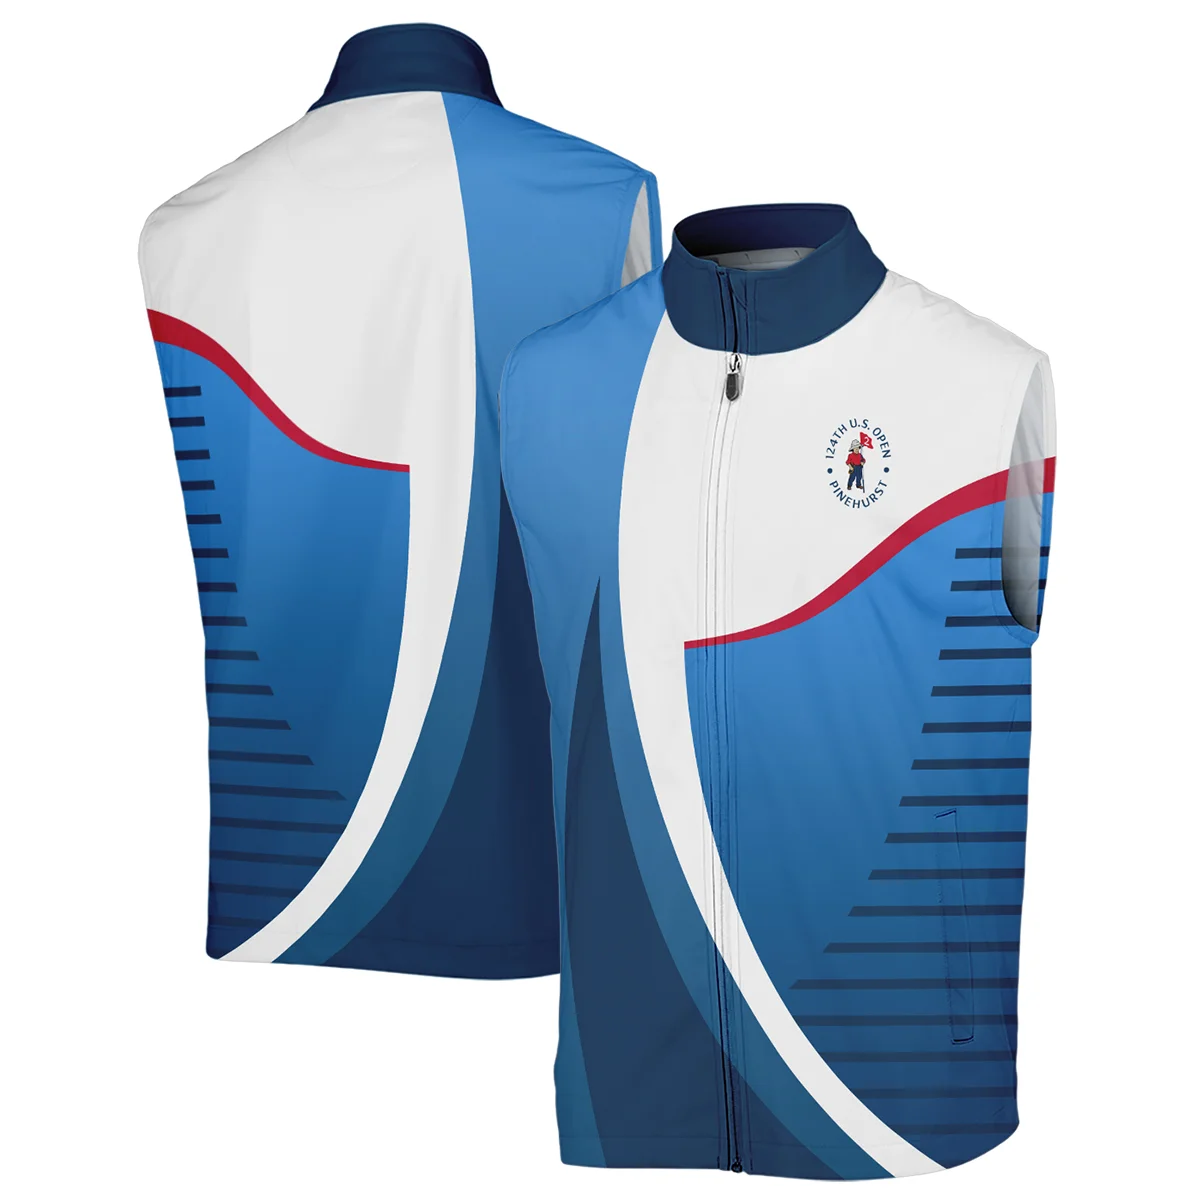 124th U.S. Open Pinehurst Golf Sport Titleist Zipper Hoodie Shirt Blue Gradient Red Straight Zipper Hoodie Shirt